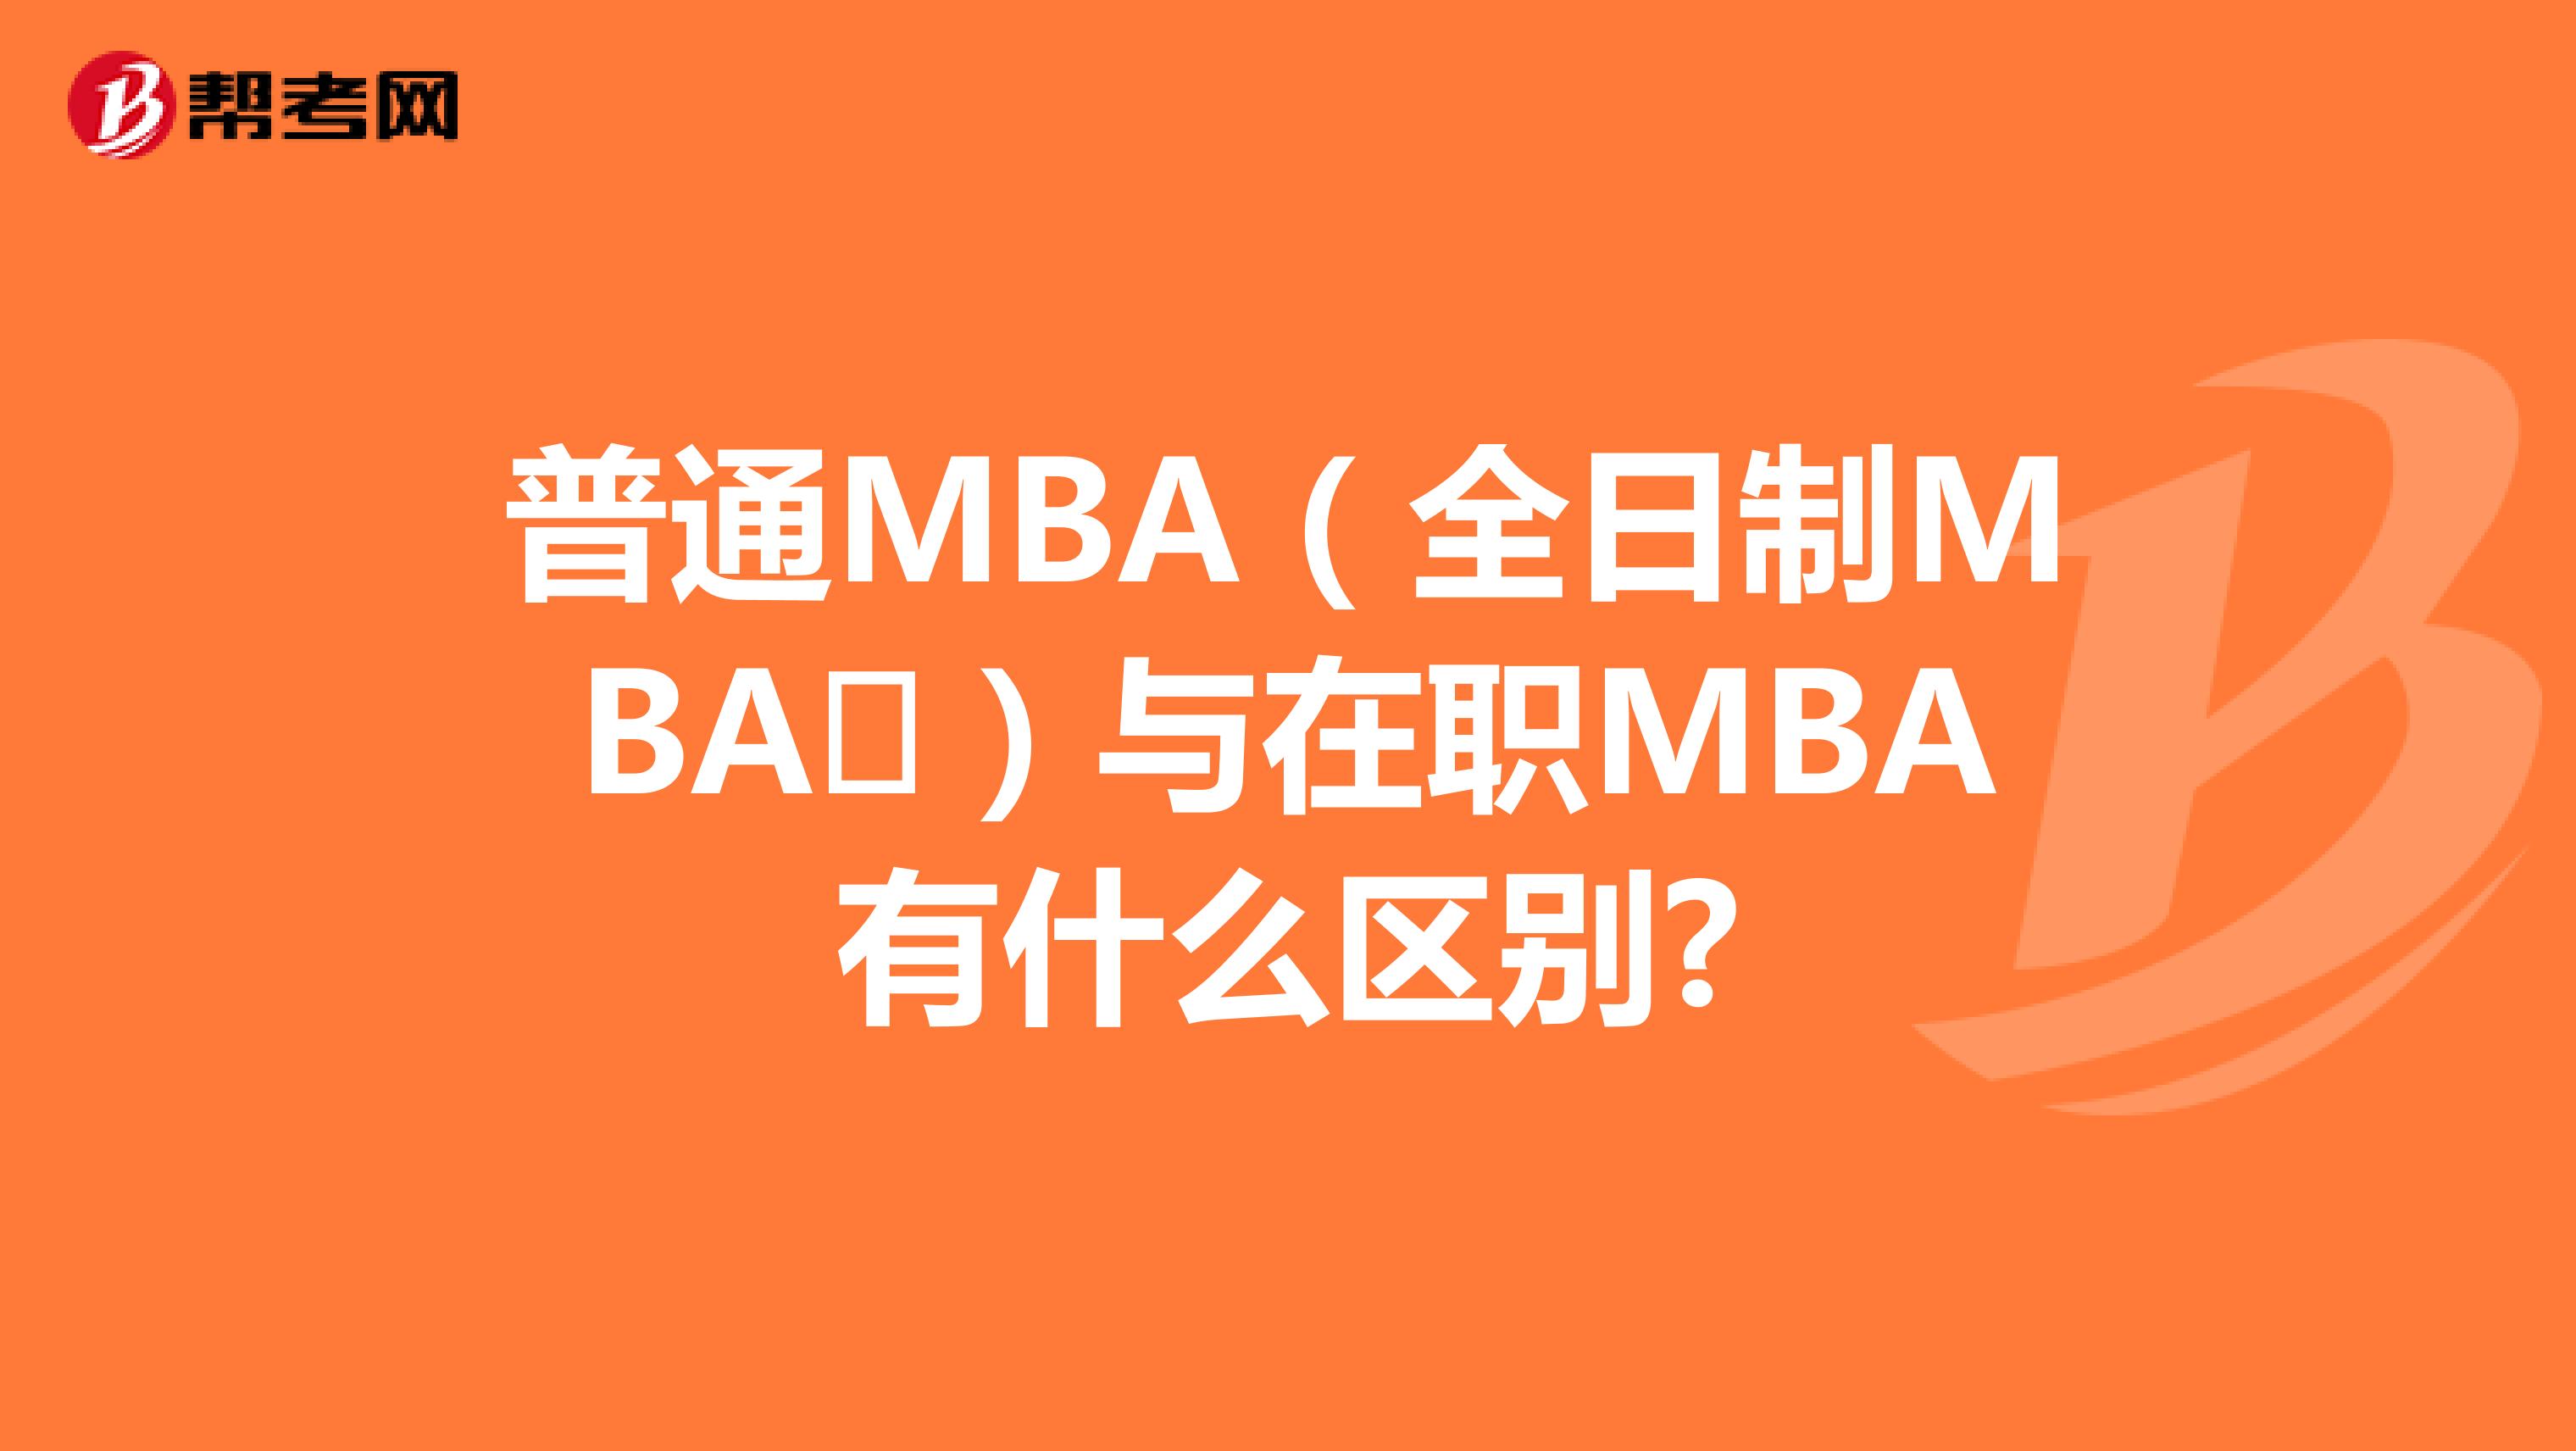 普通MBA（全日制MBA​）与在职MBA有什么区别?